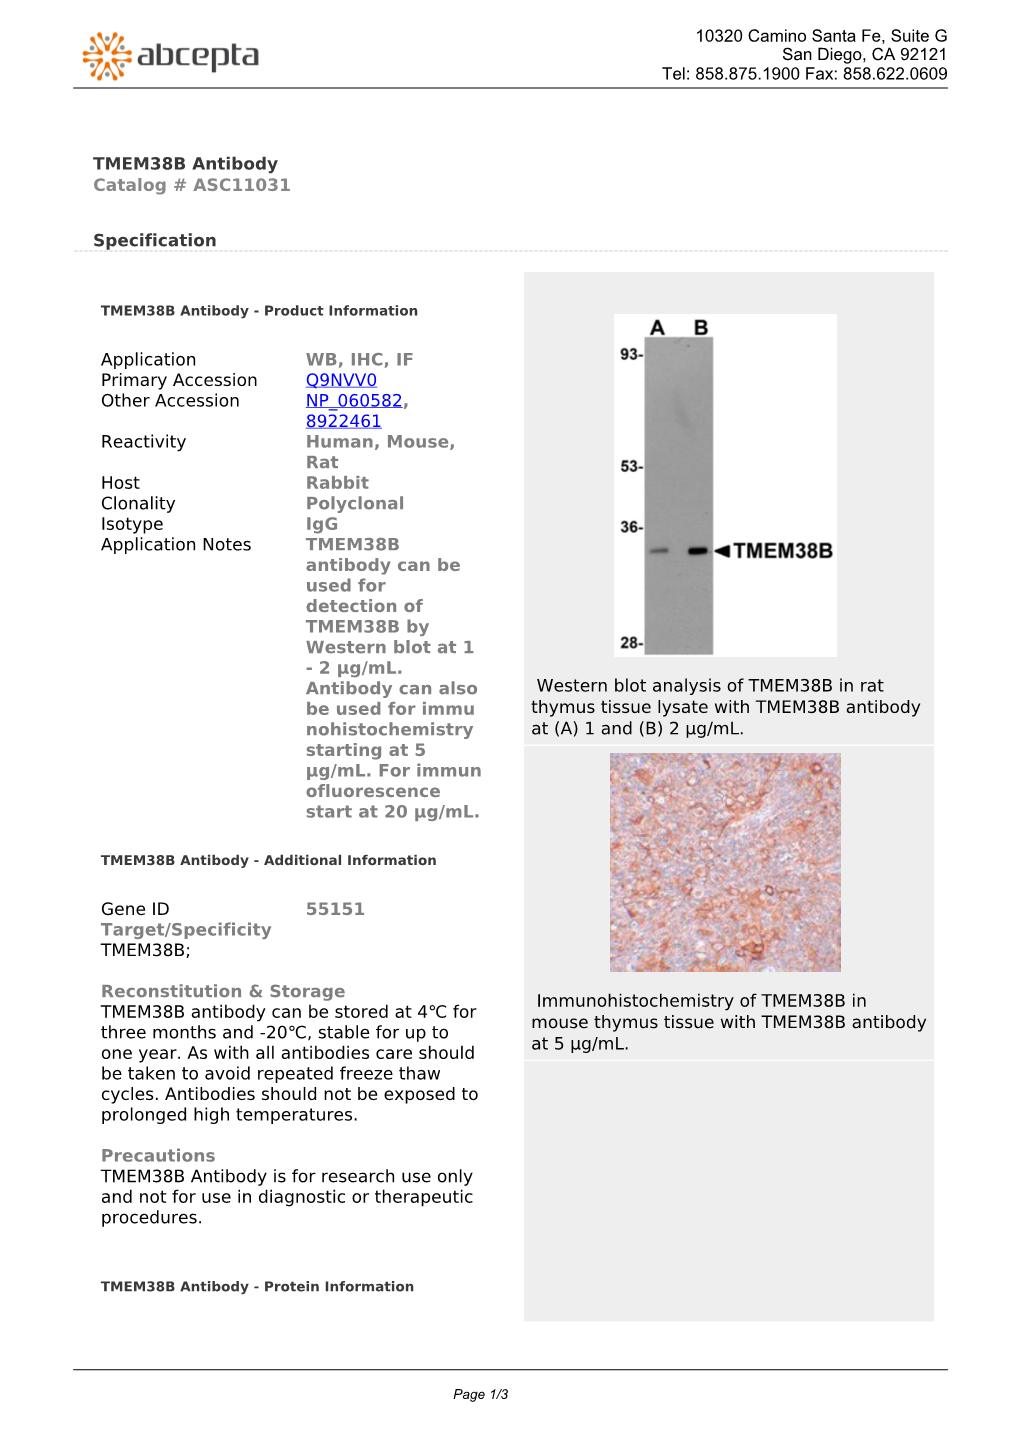 TMEM38B Antibody Catalog # ASC11031